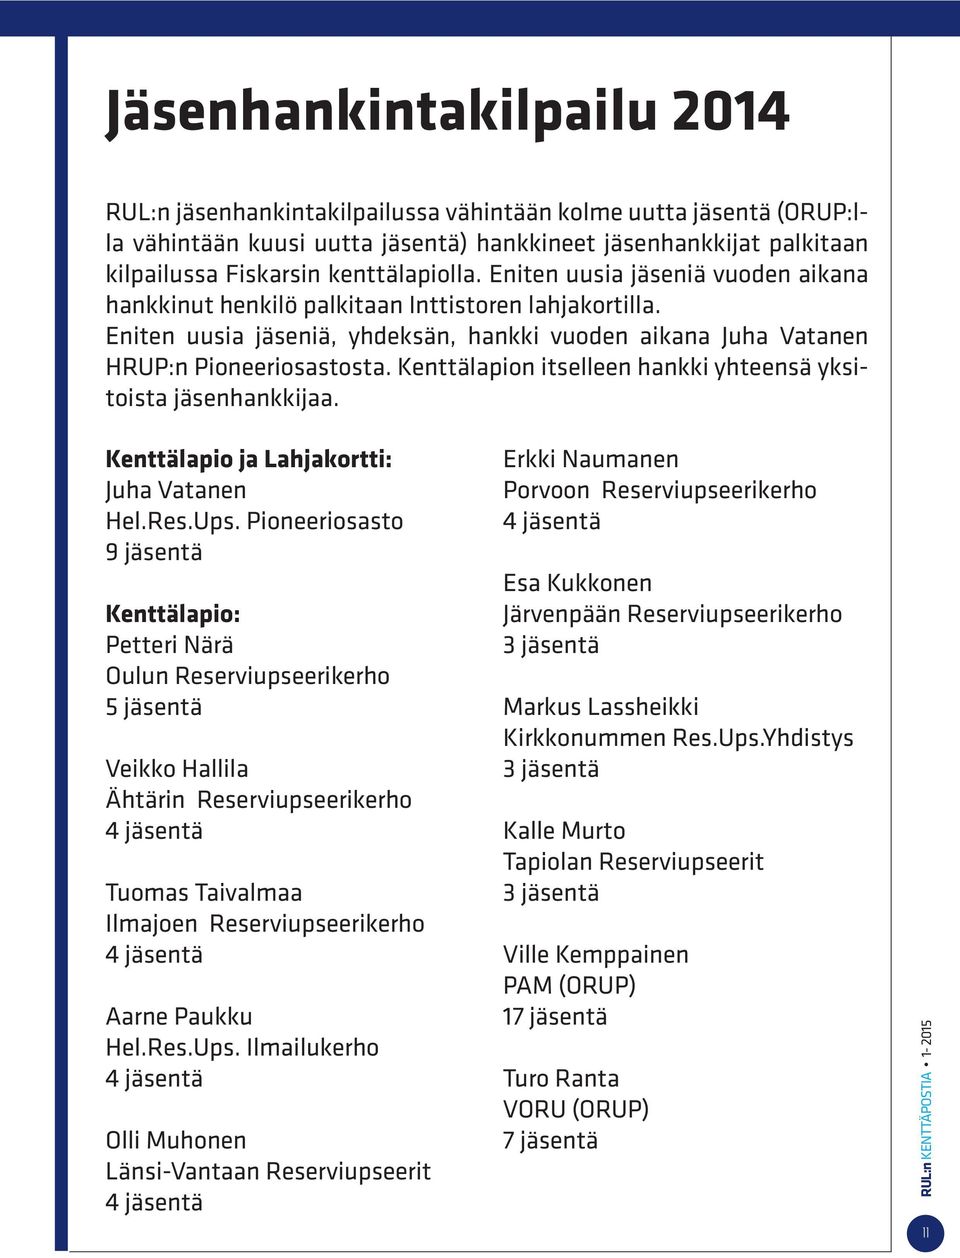 Kenttälapion itselleen hankki yhteensä yksitoista jäsenhankkijaa. Kenttälapio ja Lahjakortti: Juha Vatanen Hel.Res.Ups.